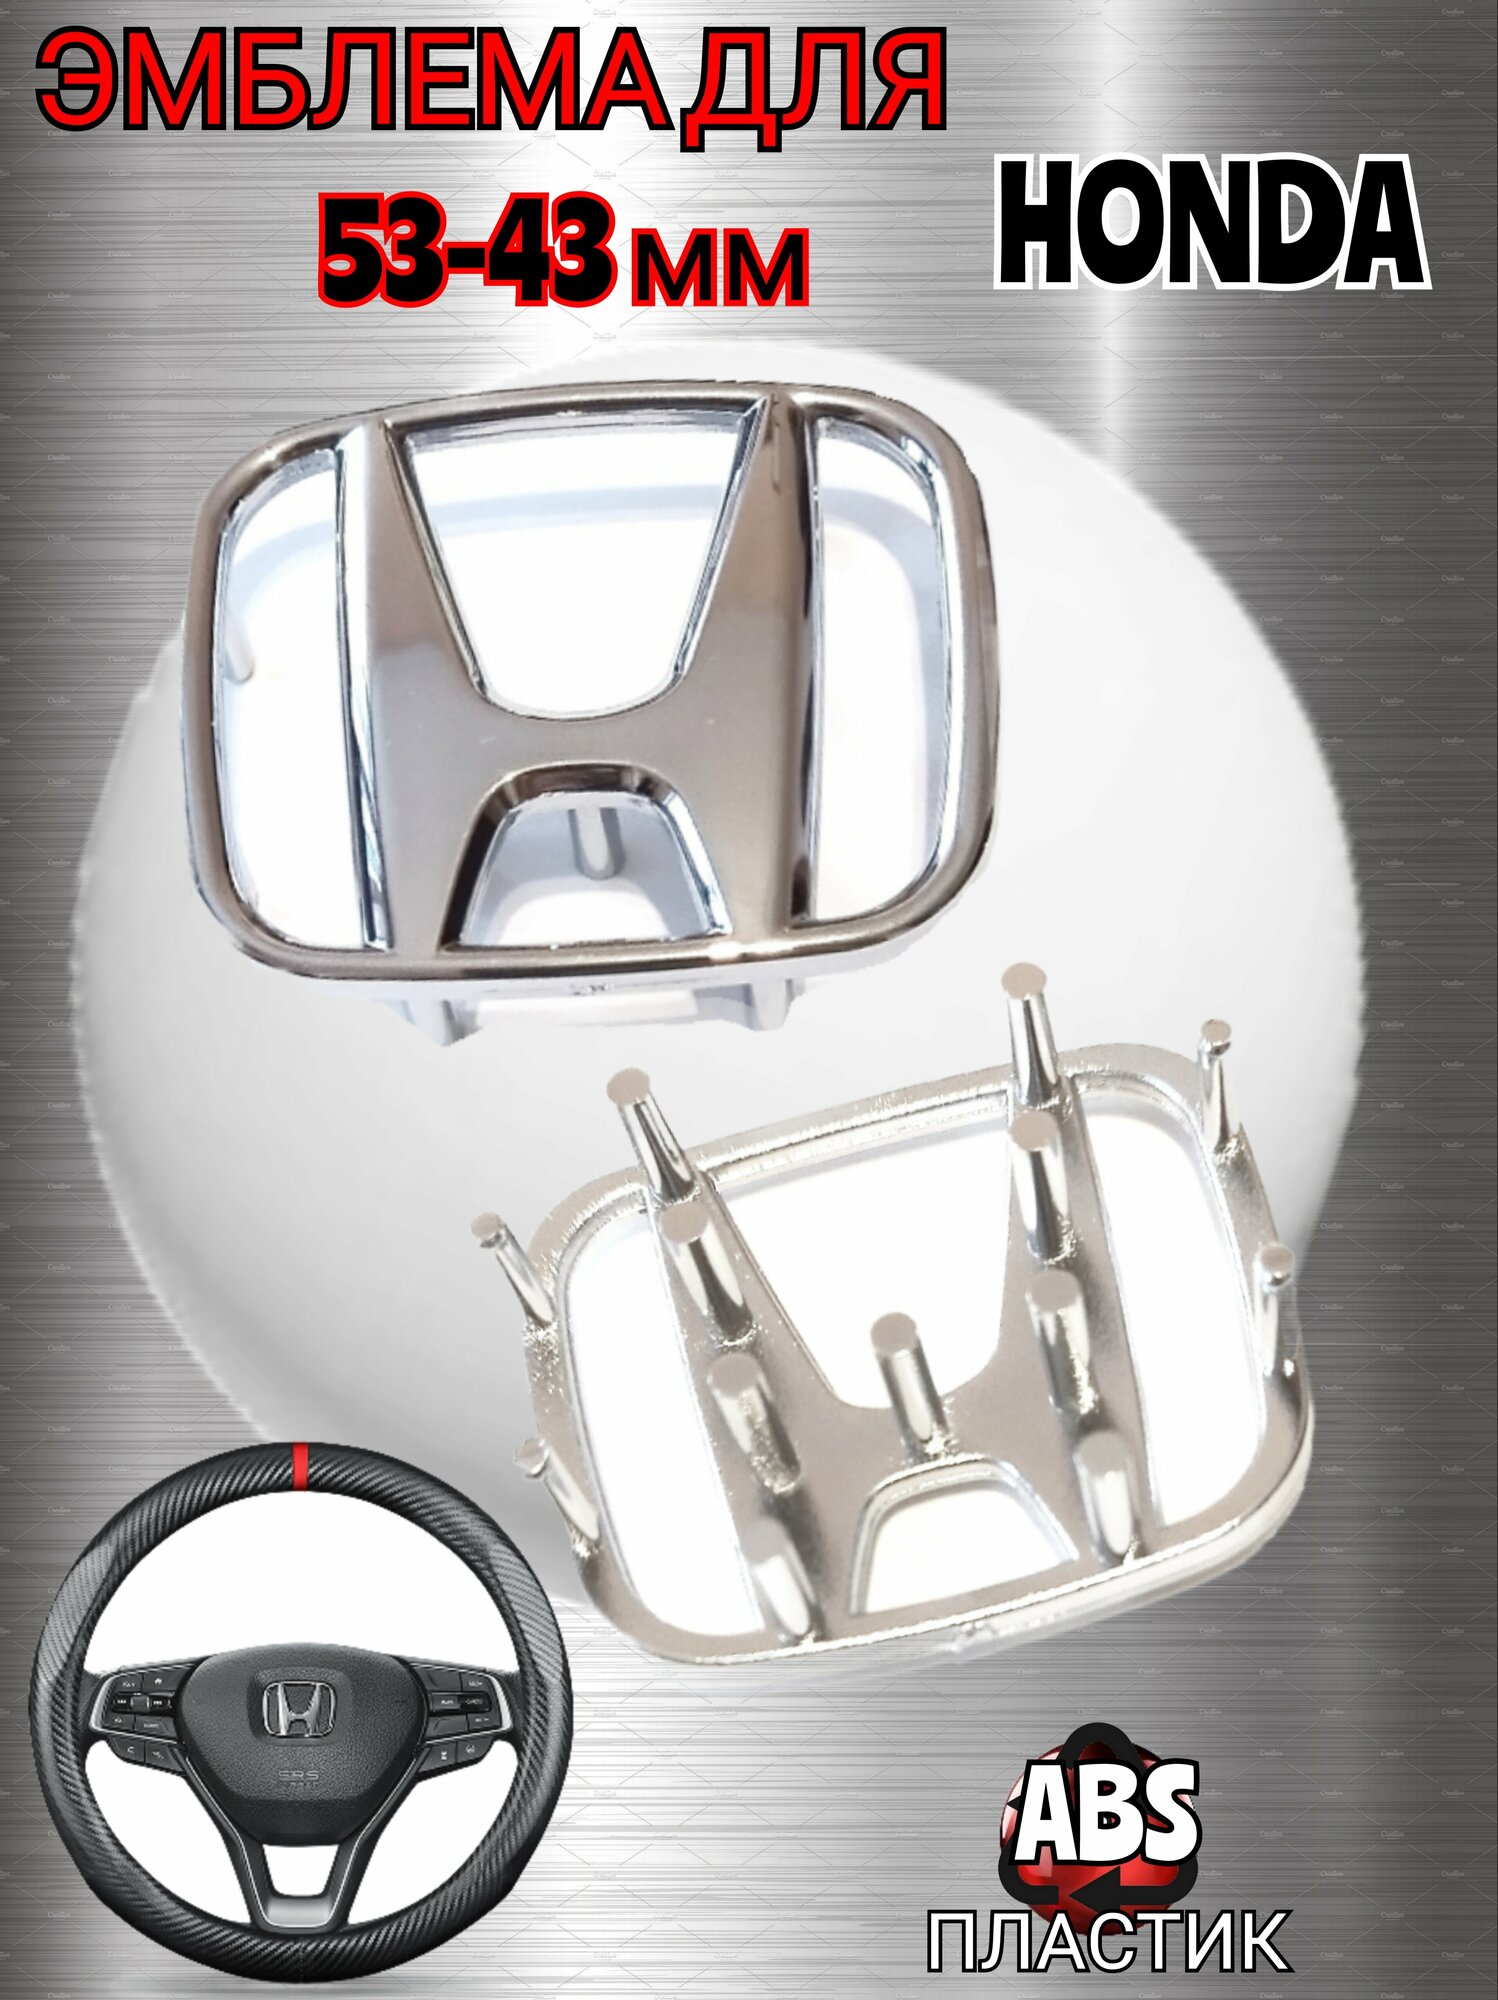 Эмблема ( орнамент, шильдик) на руль для автомобиля Honda Хонда 53-43 мм цвет хром